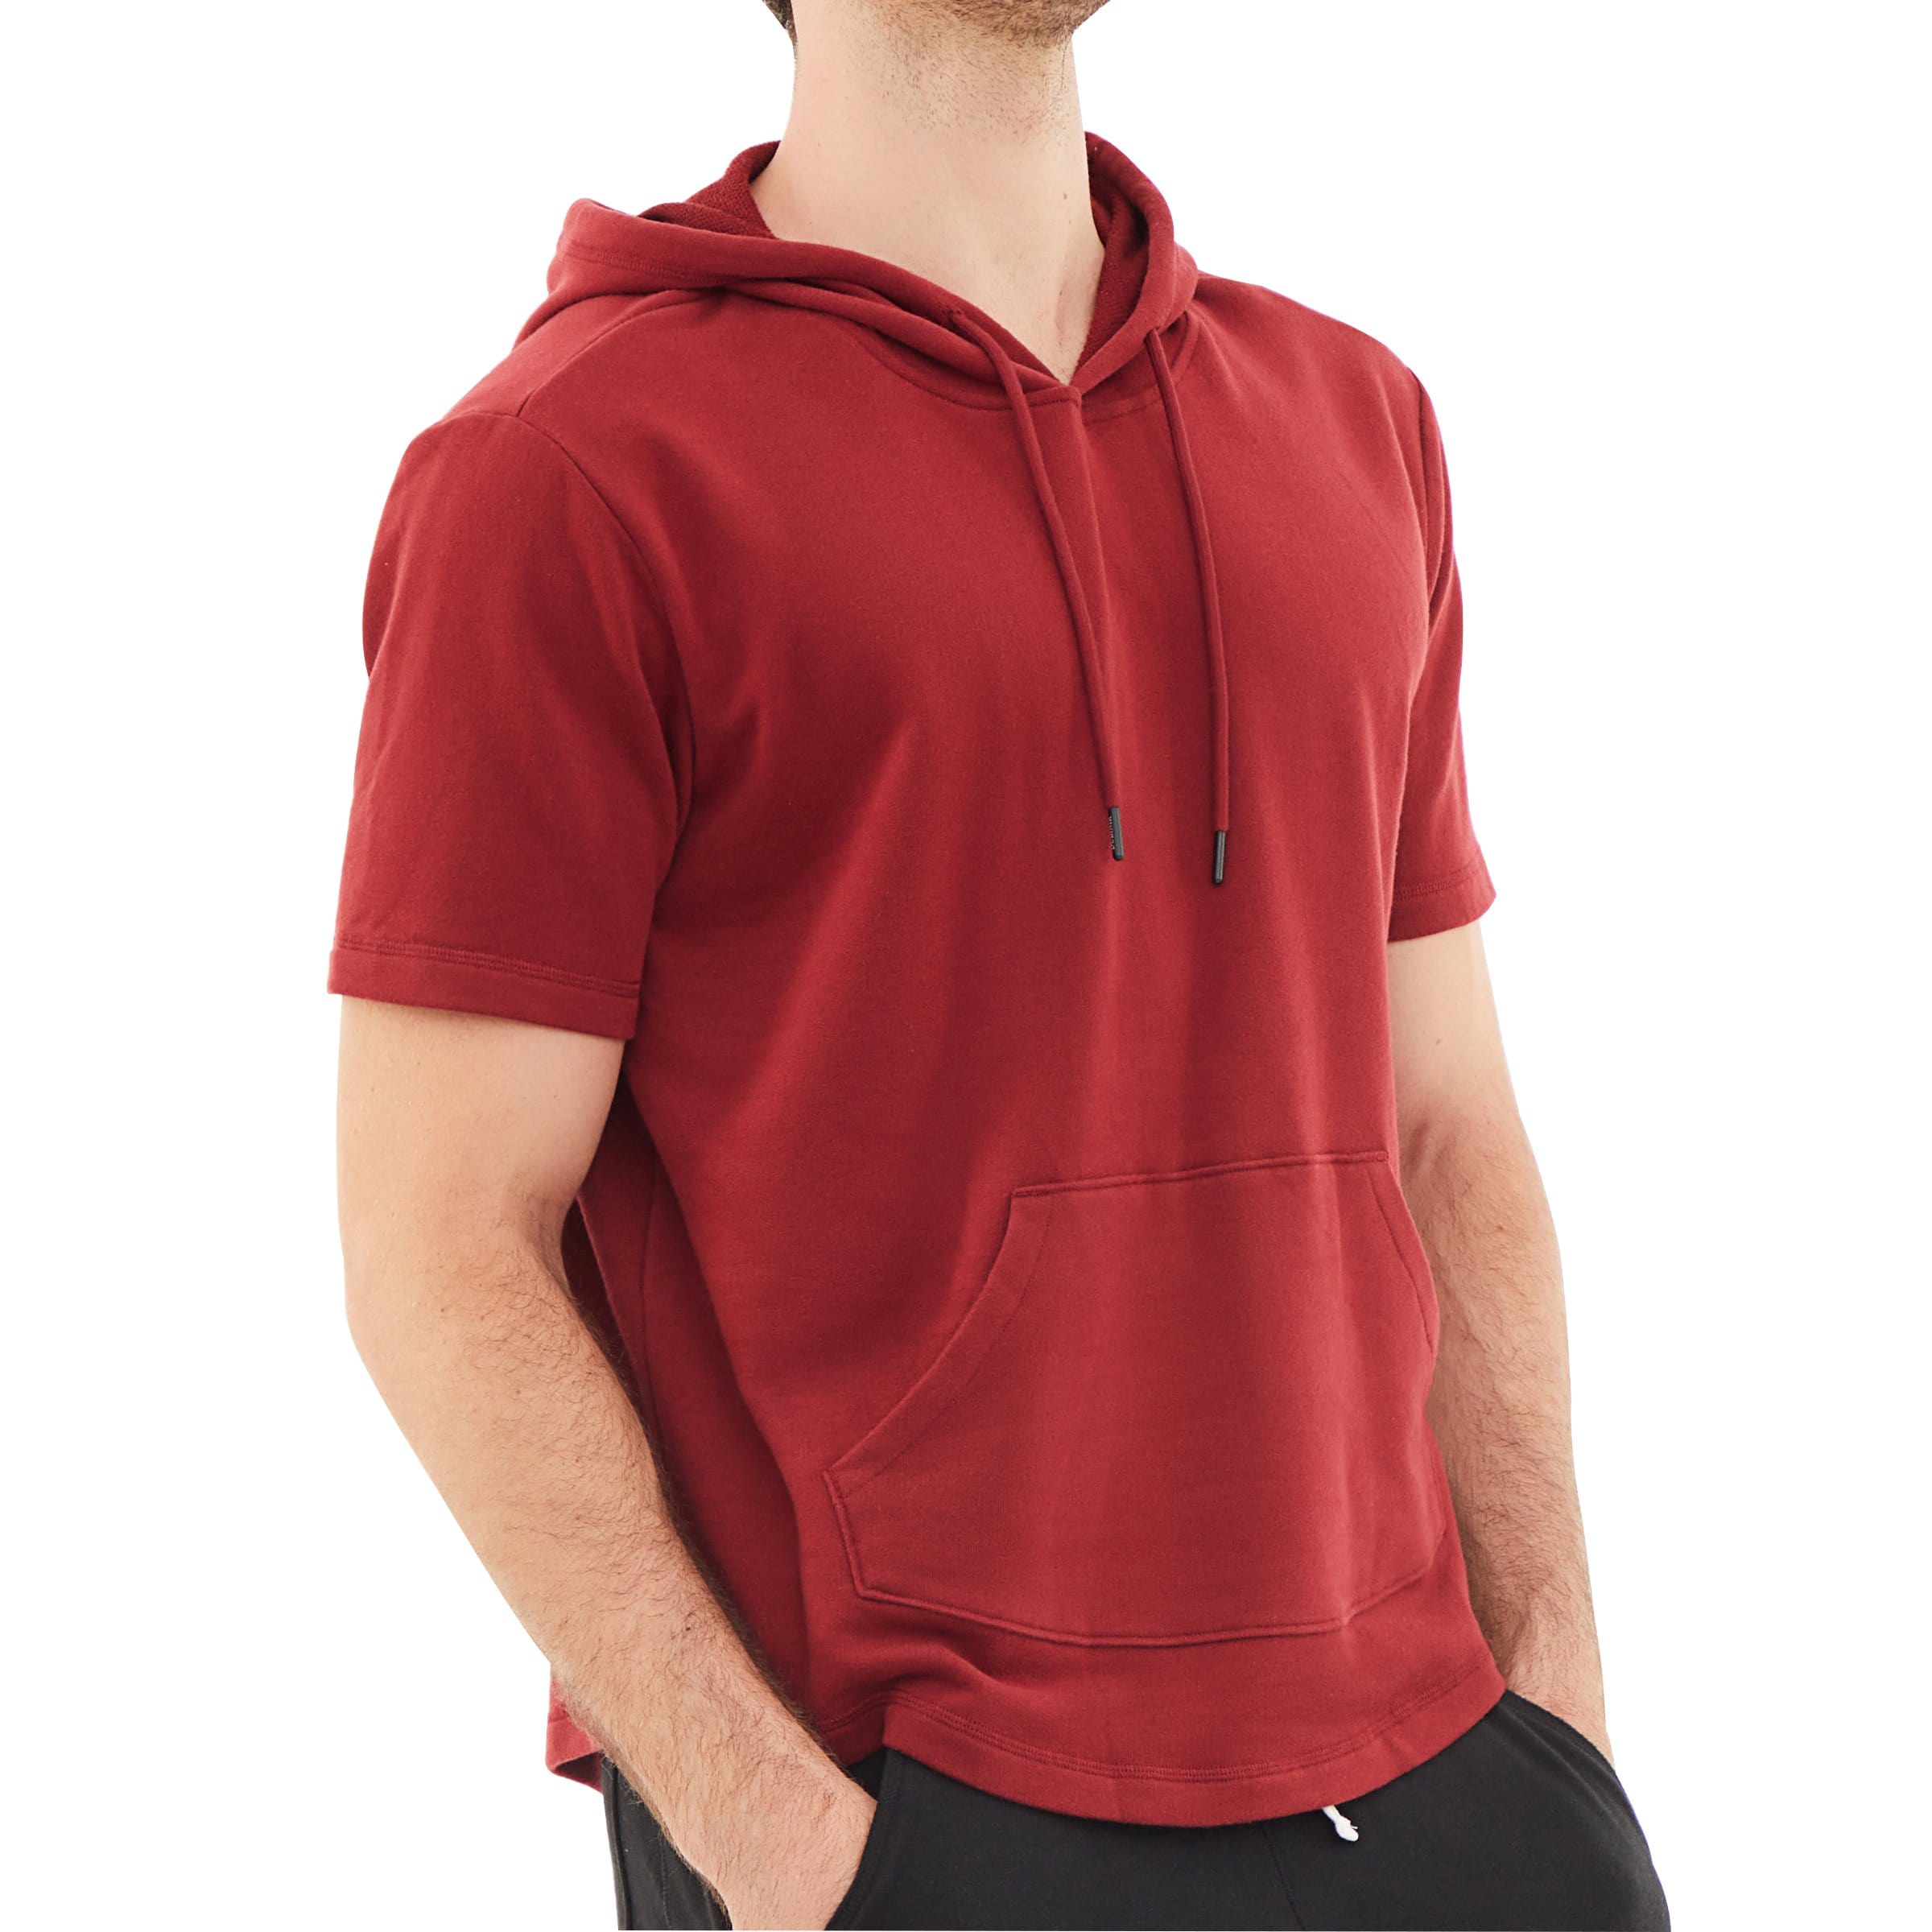 Men's Hoodies short-sleeved hooded sweatshirt #0603